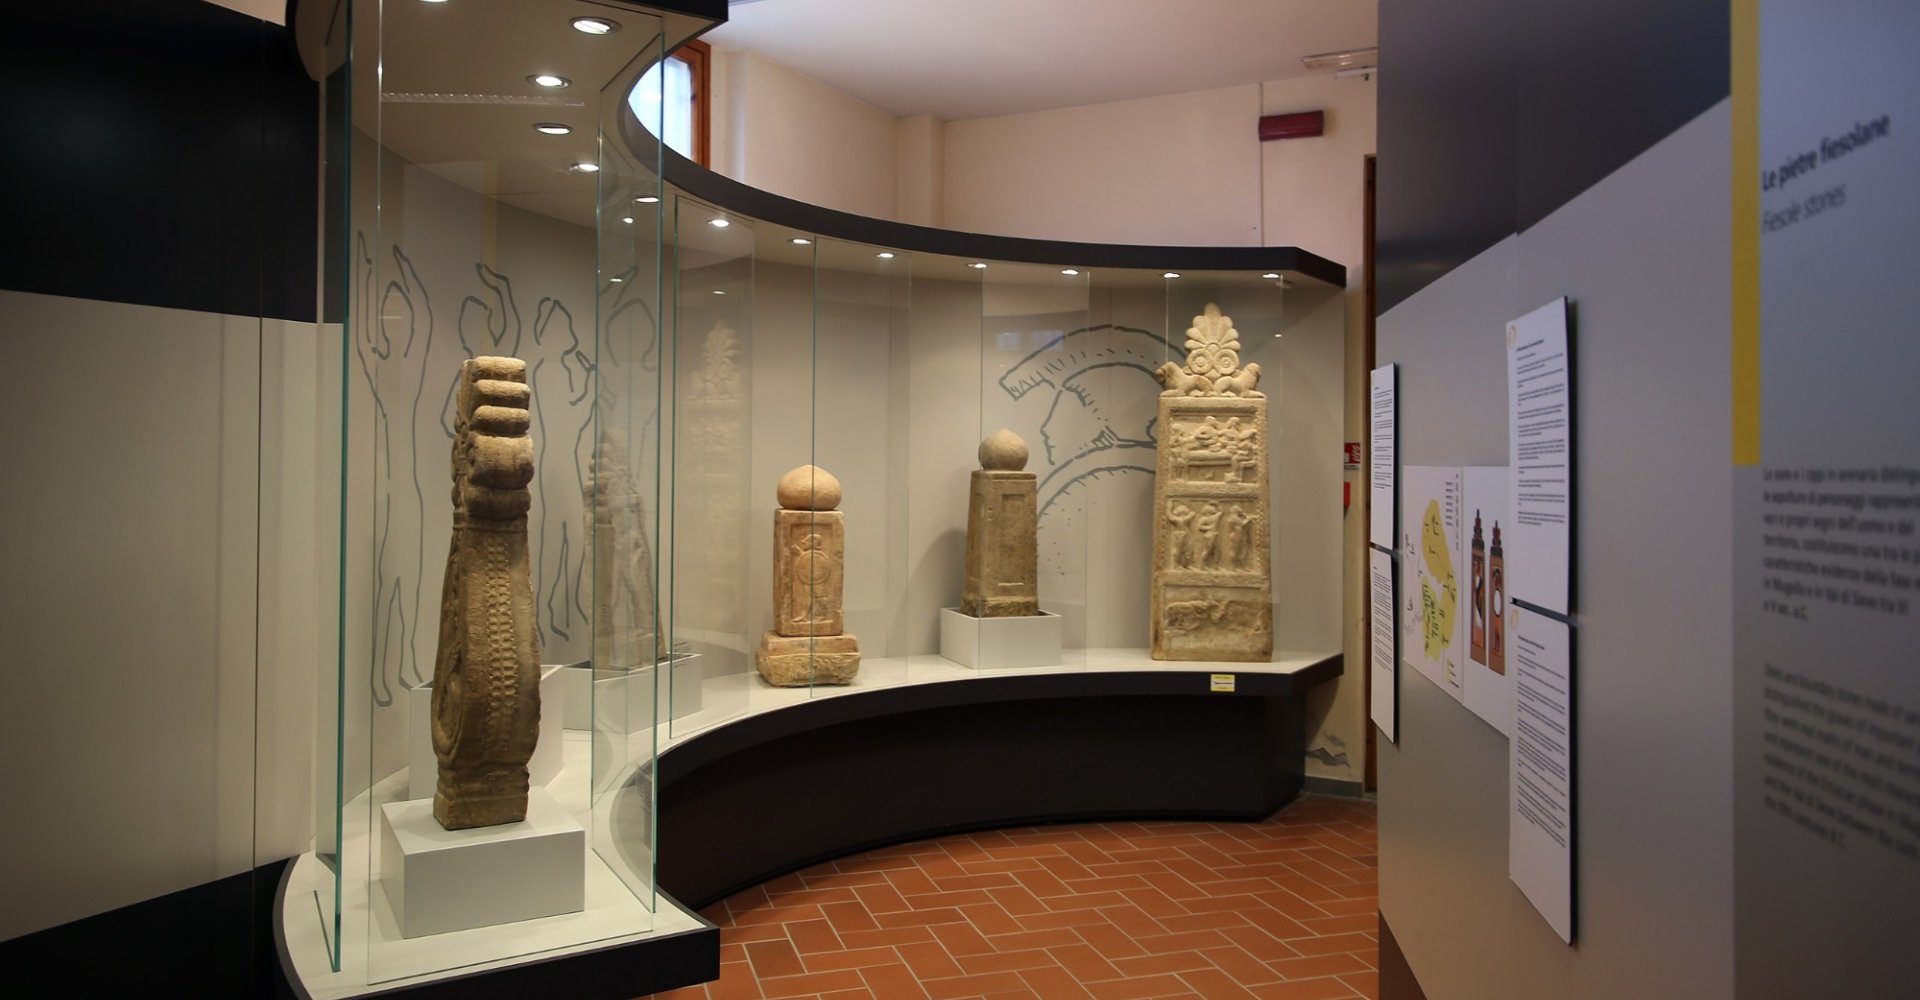 Museo Arqueológico de Dicomano